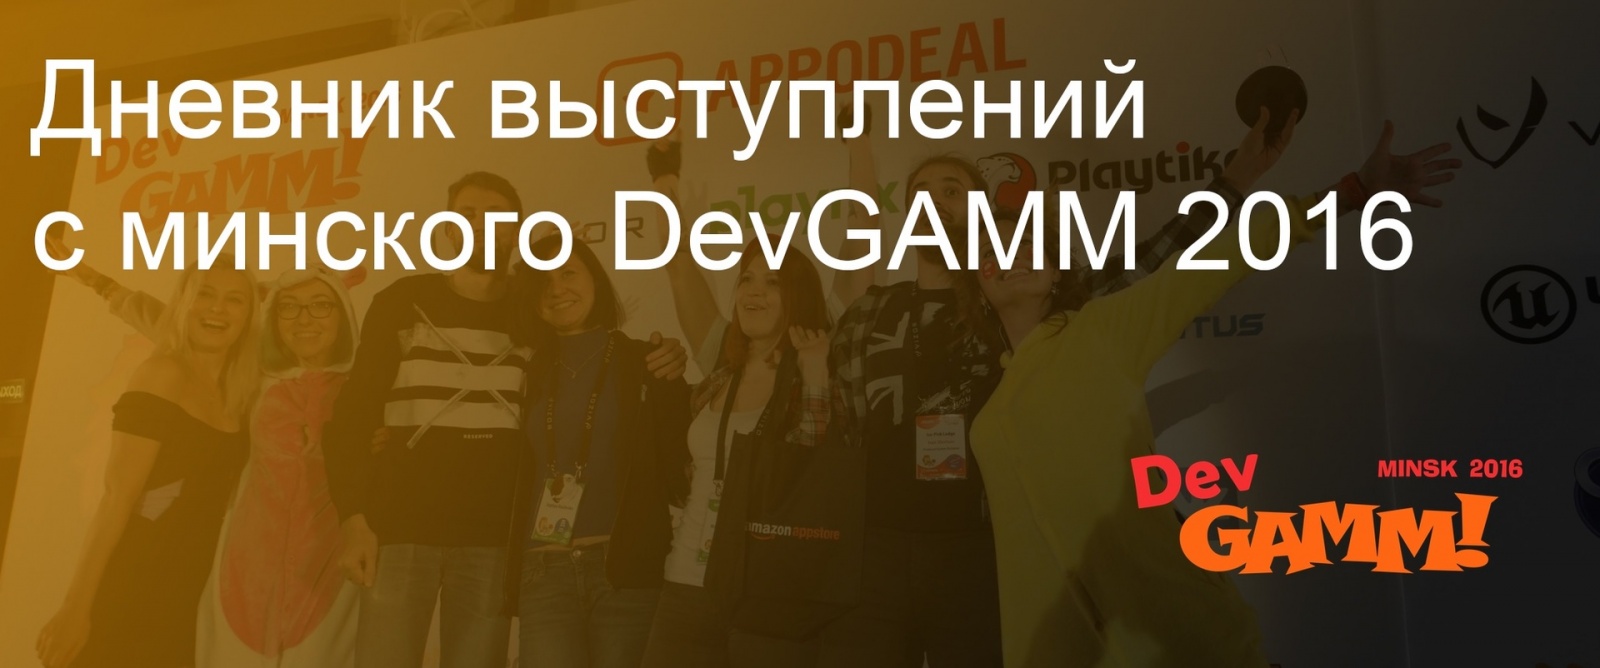 Дневник выступлений с минского DevGAMM 2016 - 1